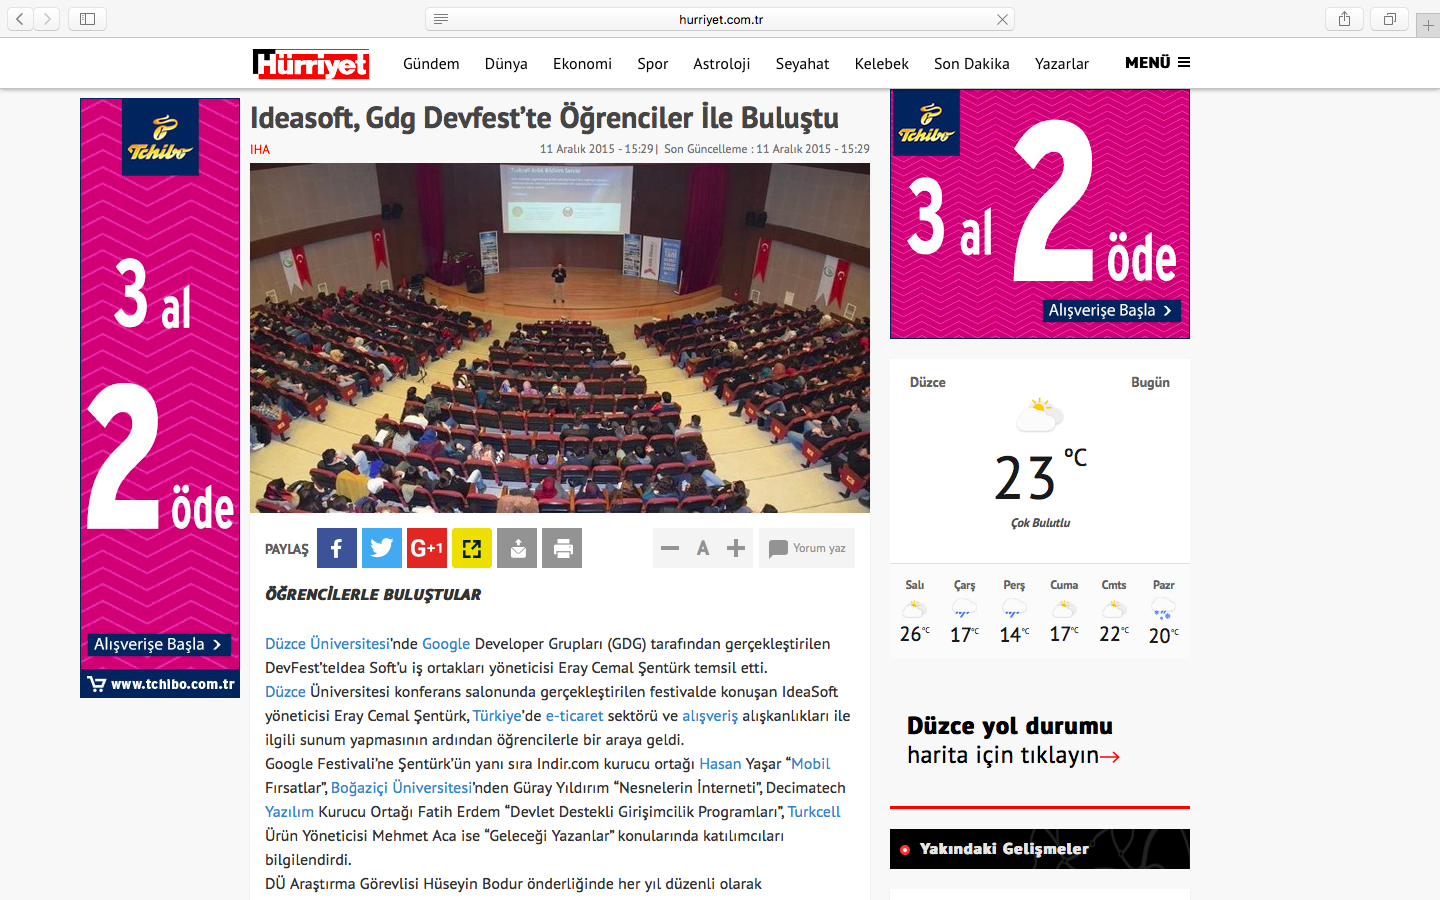 Ideasoft, Düzce Üniversitesi Gdg Devfest konferansı ulusal basında.